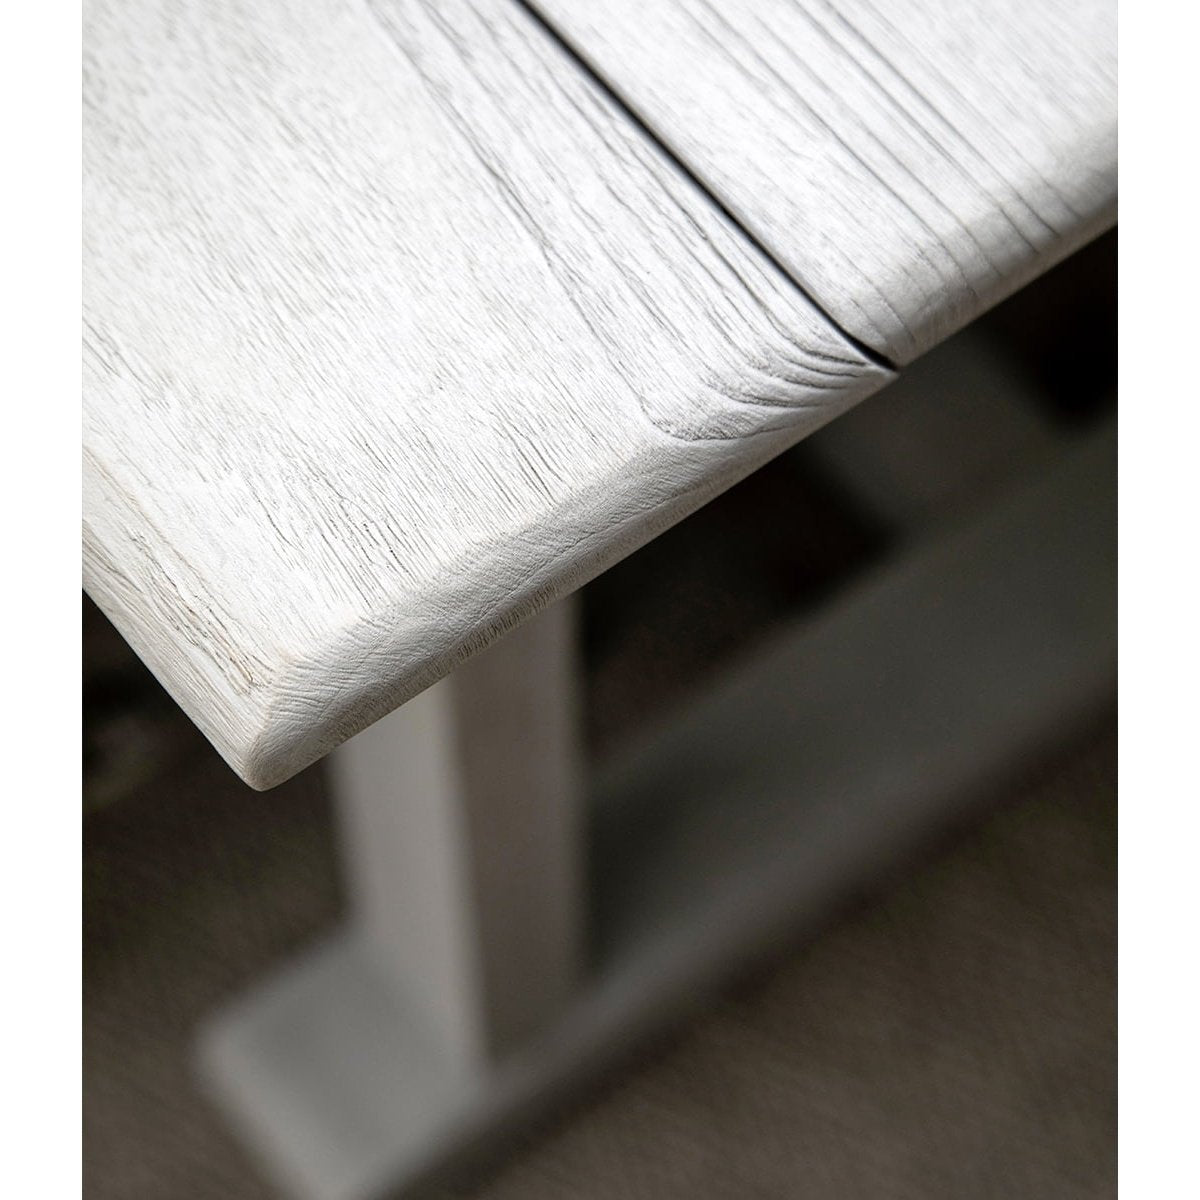 PALERMO spisebord - -Artwood -Nordstrand Møbler og Interiør